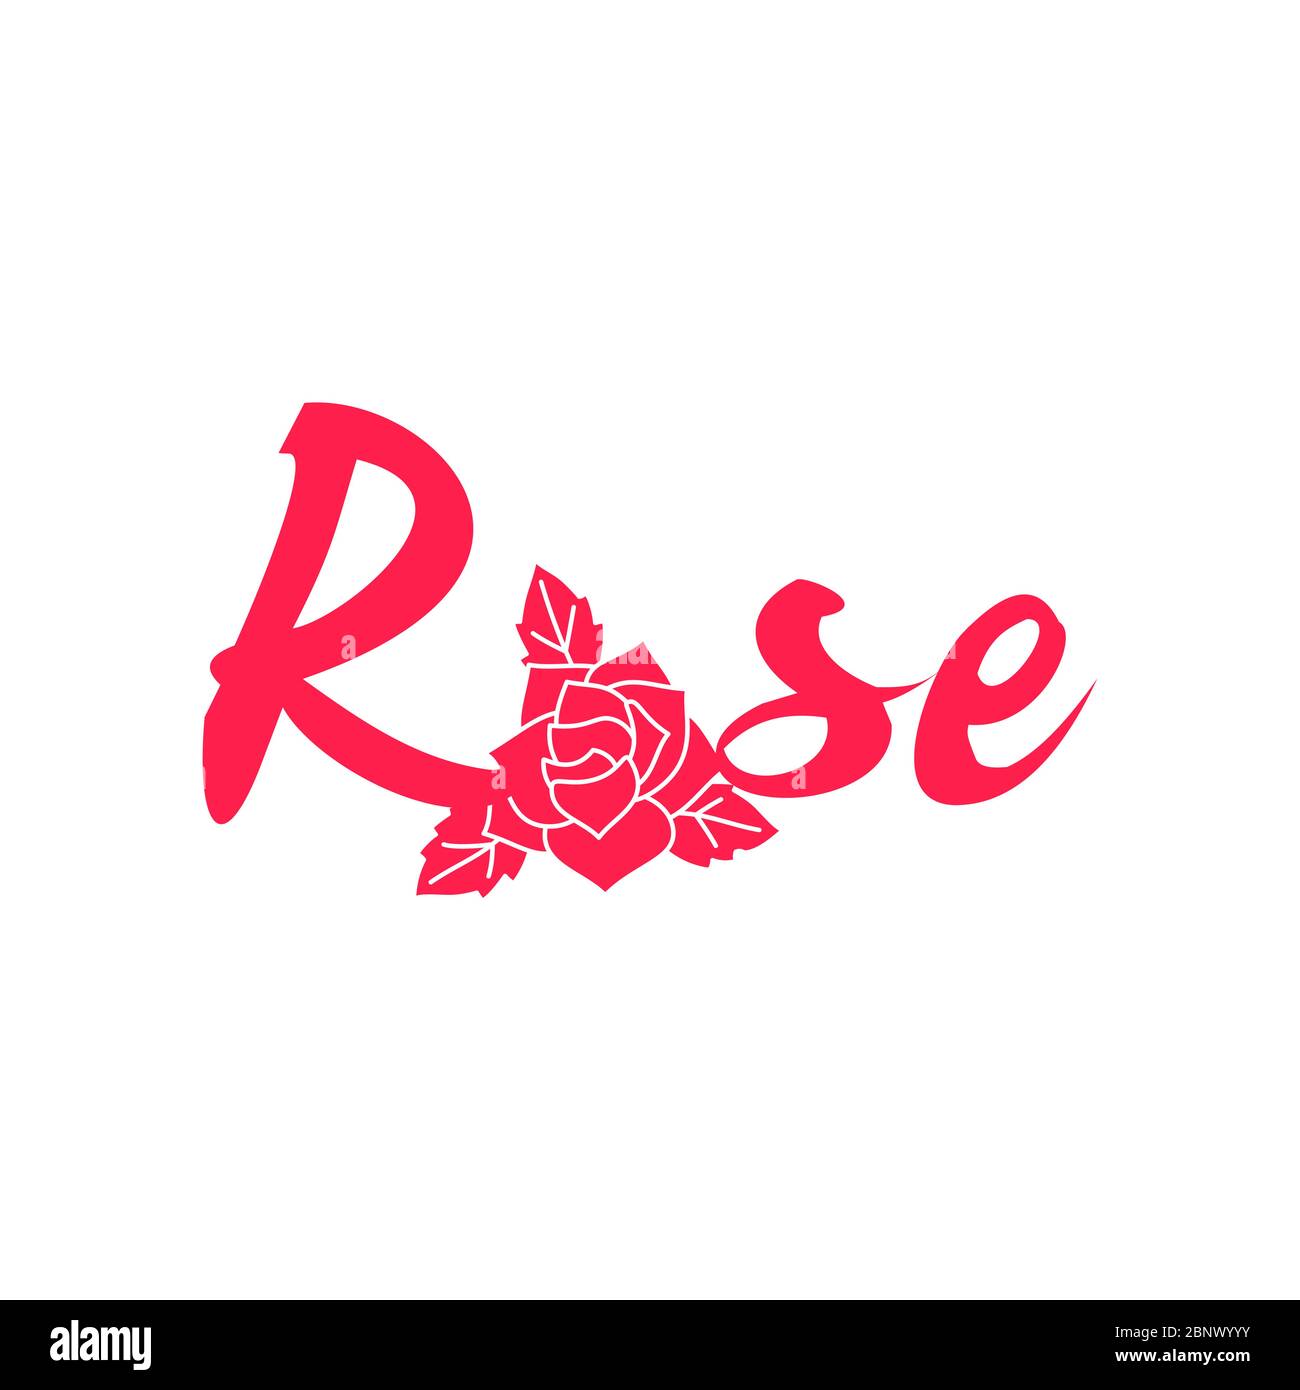 Rosa parola moda rosa, scritta disegnata a mano, rosa e simbolo foglia. Illustrazione vettoriale Illustrazione Vettoriale